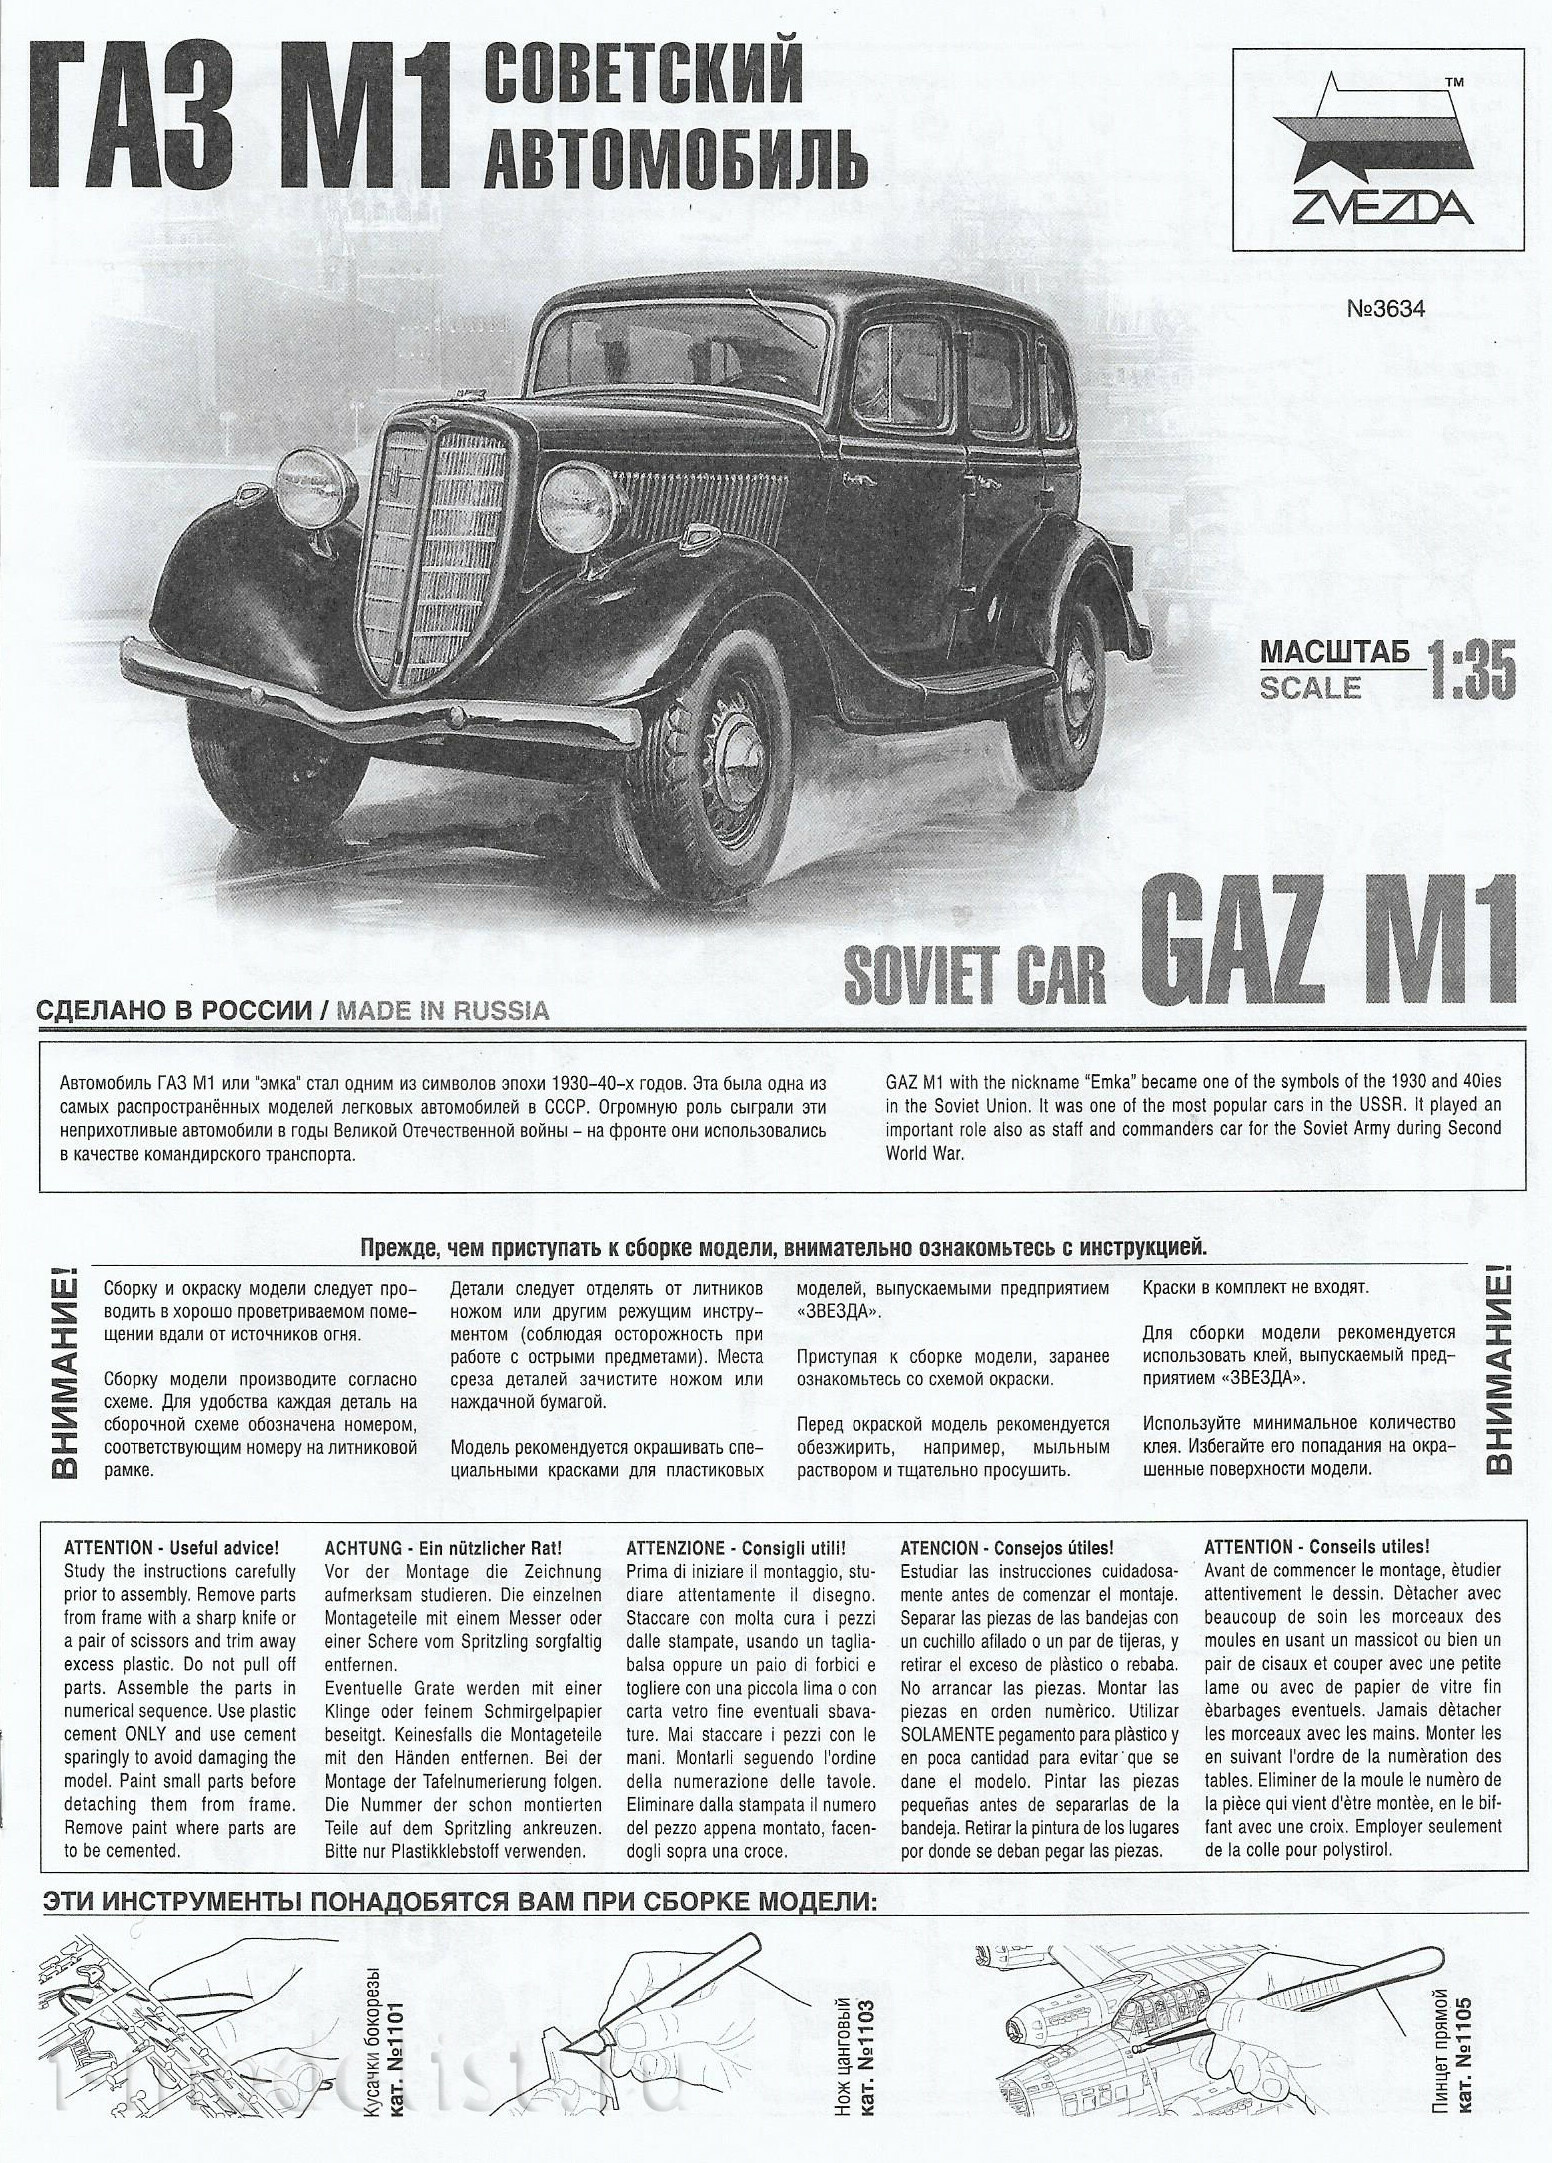 3634 Zvezda 1/35 Soviet GAZ M1